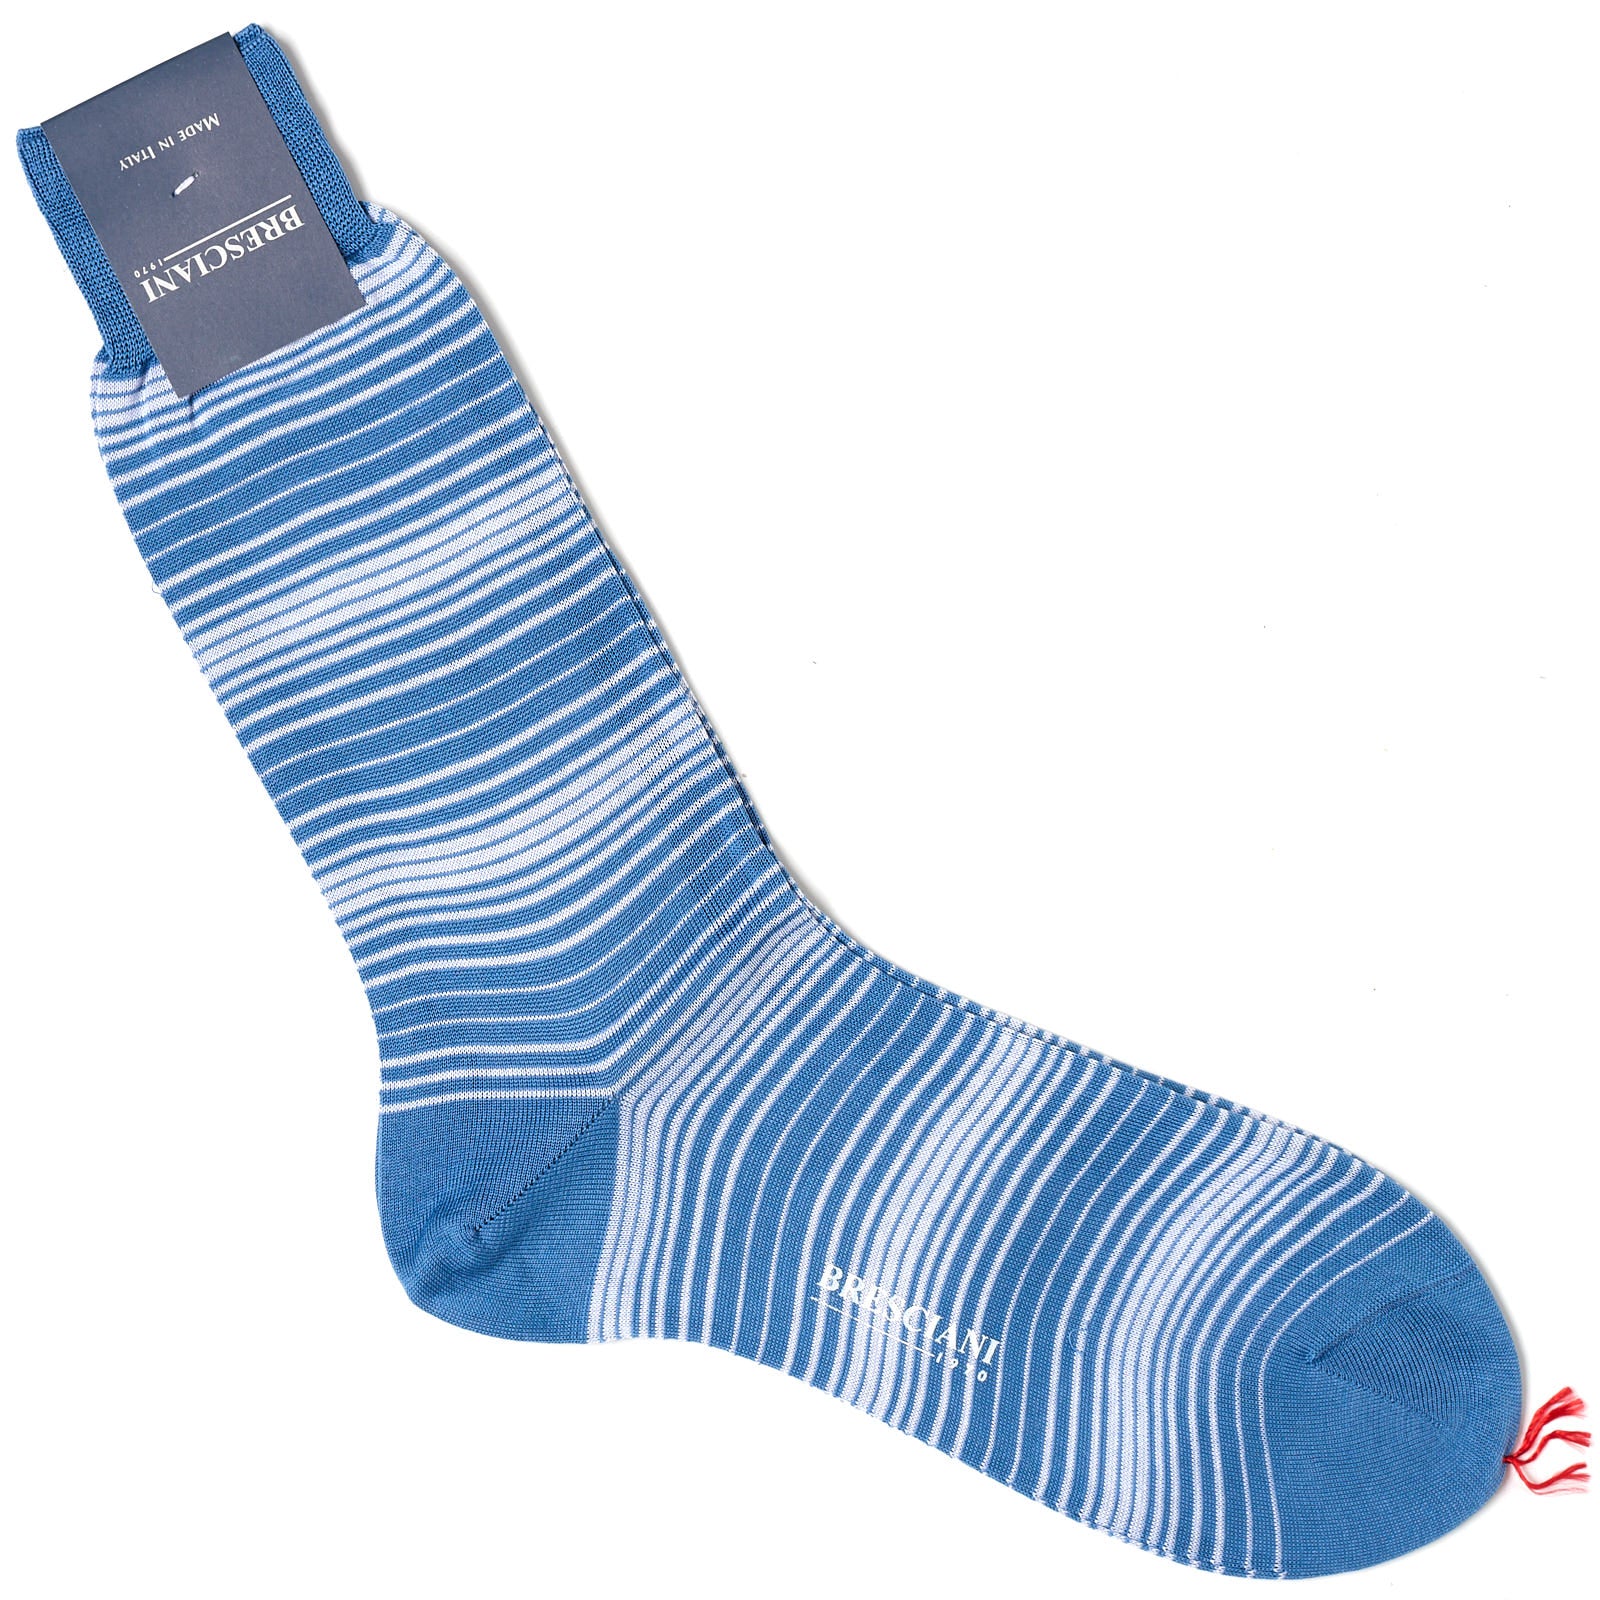 BRESCIANI Cotton Striped Design Mid Calf Length Socks US M-L